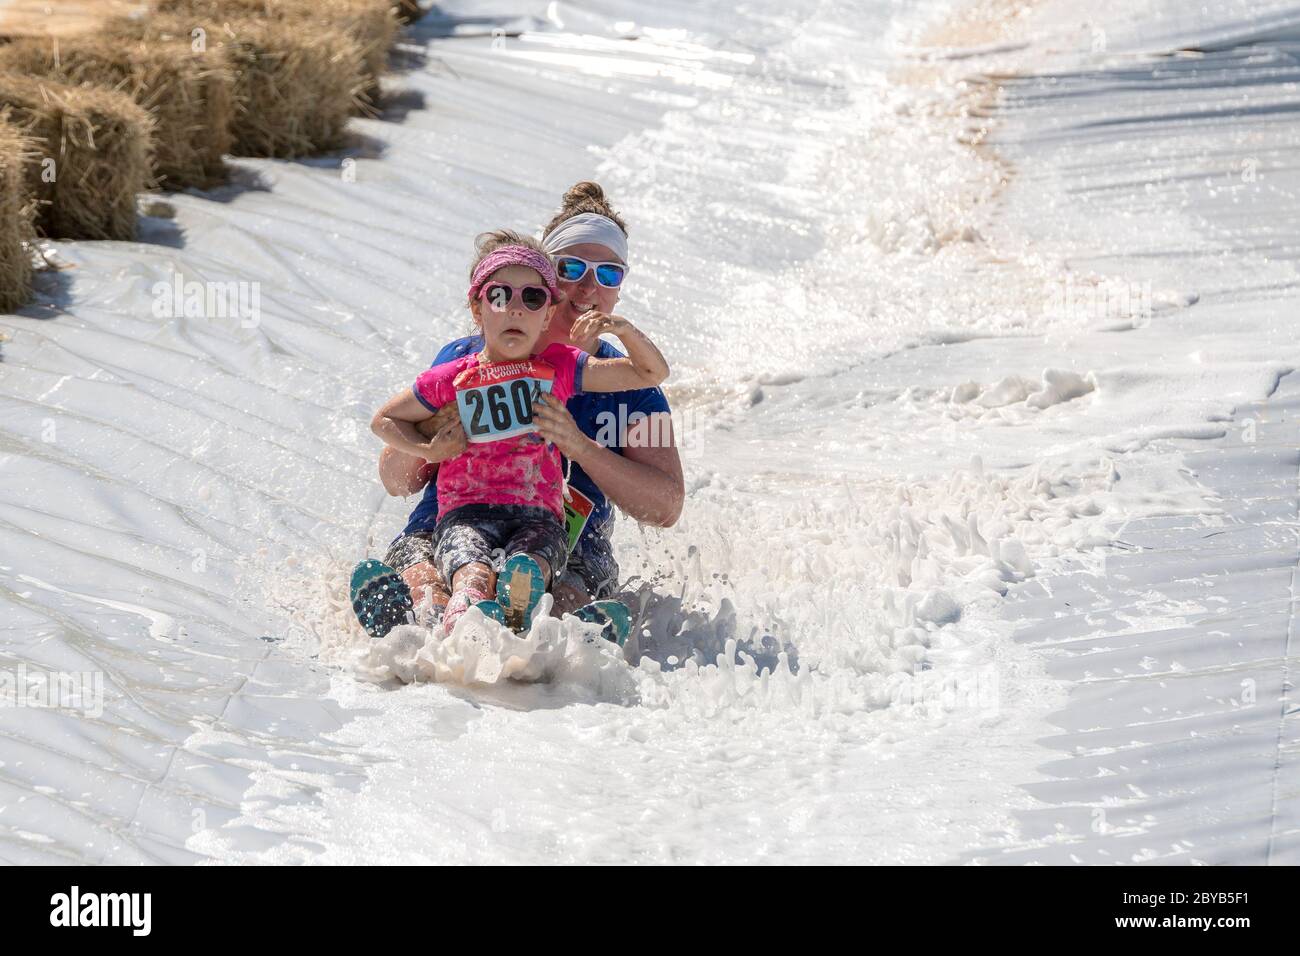 Poley Mountain, New Brunswick, Canadá - 10 de junio de 2017: Participando en la recaudación de fondos anual 'Mud Run for Heart'. Una mujer y un niño se deslizan por una espuma Foto de stock